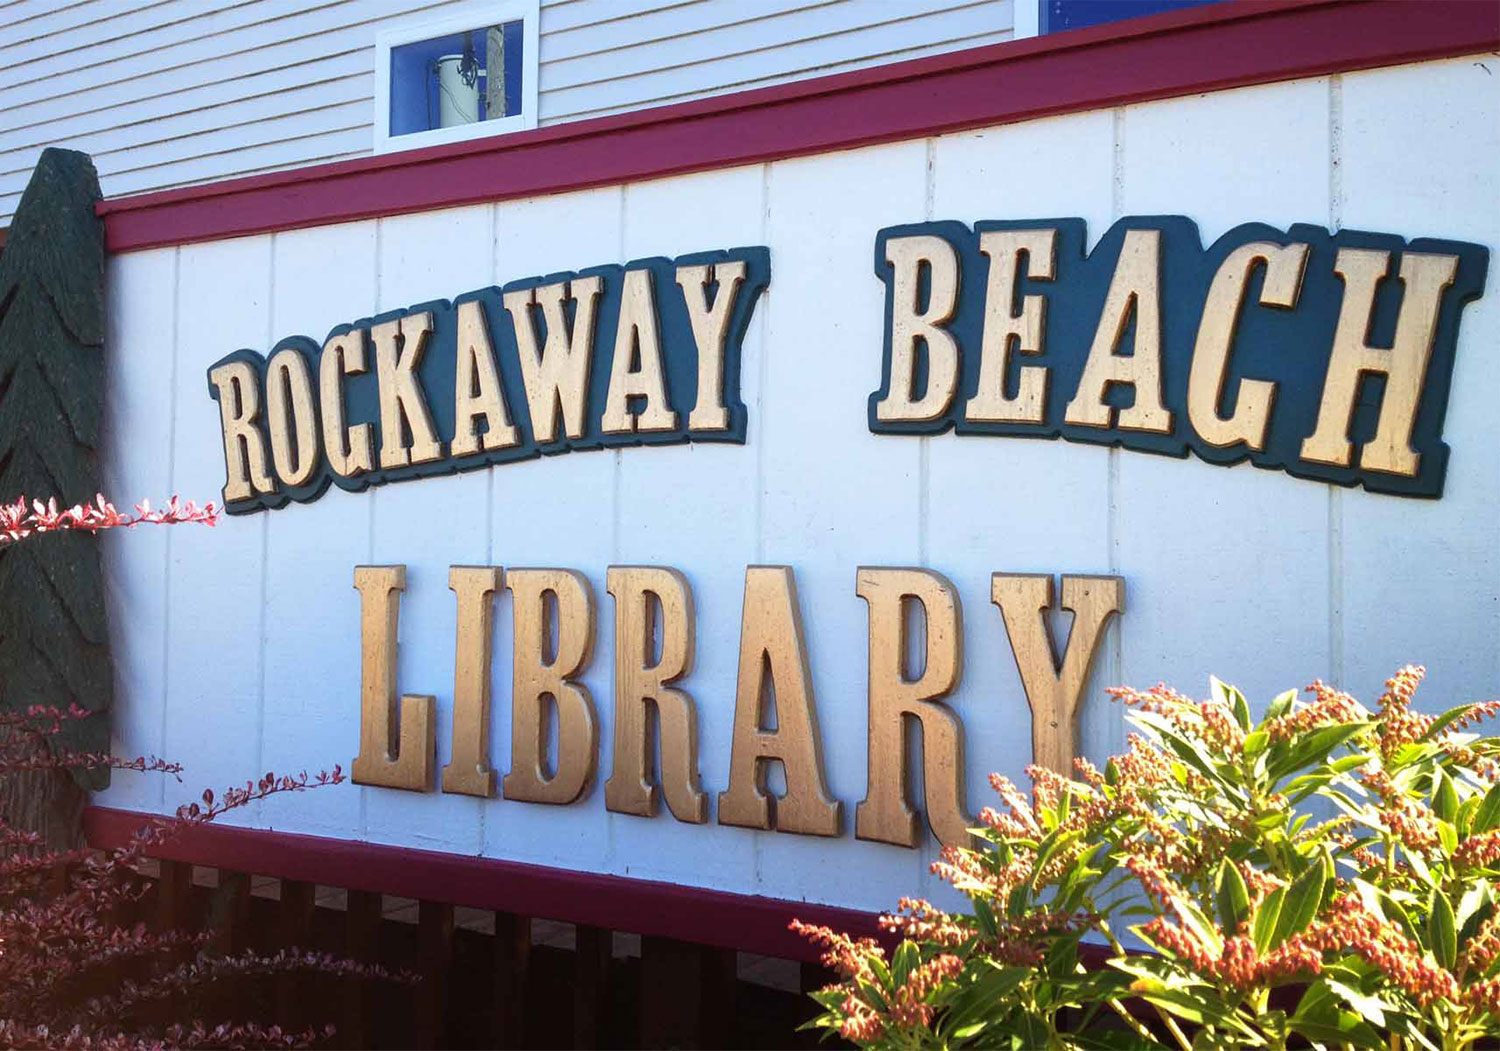 Rockaway library arts